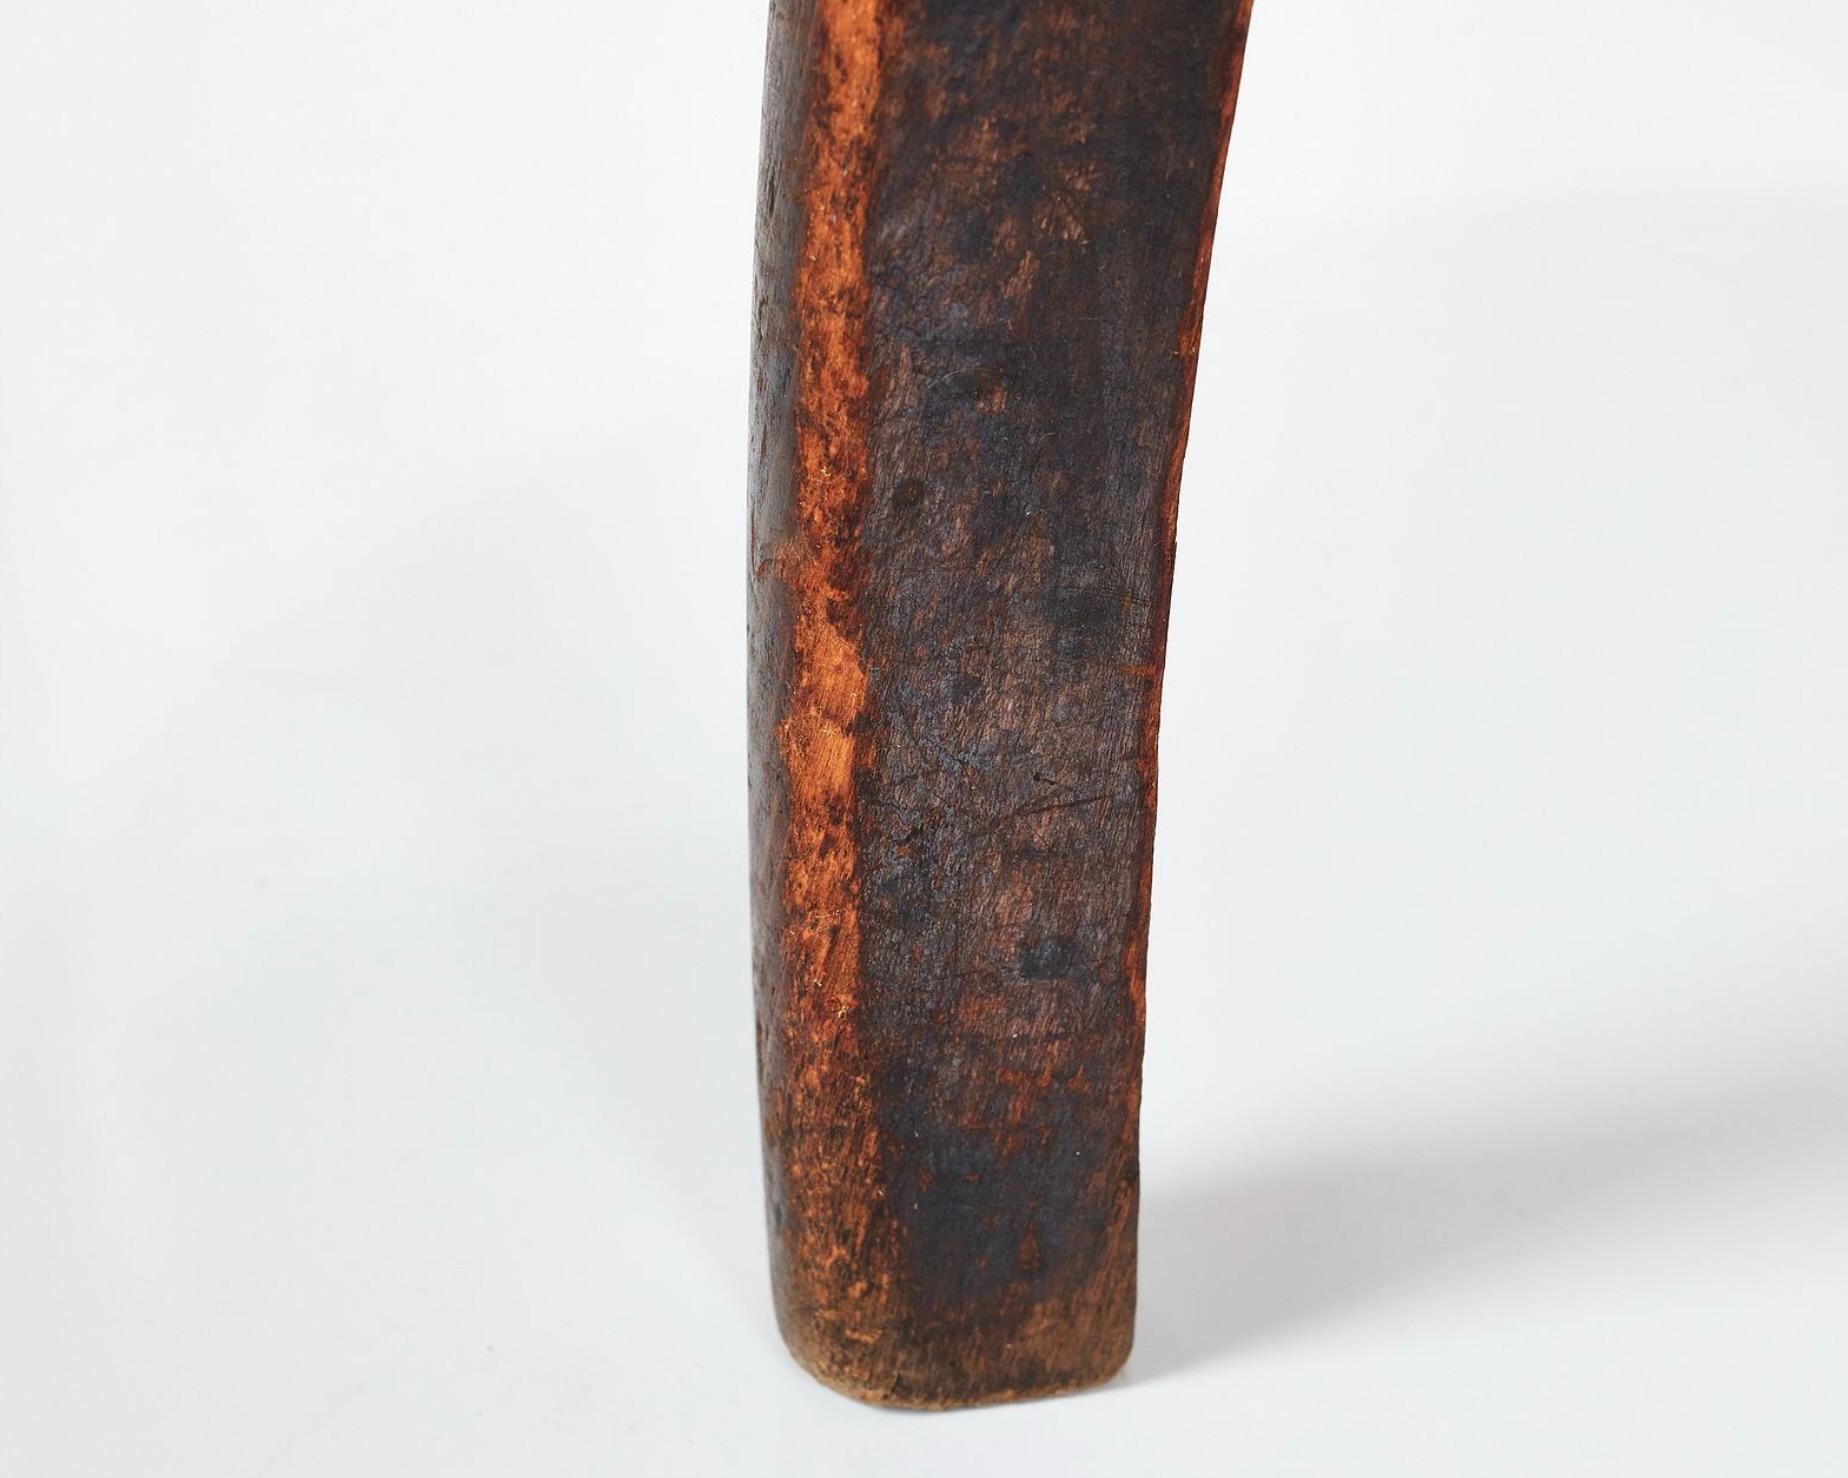 Ces tabourets Fritz Hansen de 1940, fabriqués en acajou et en cuir, sont des exemples précoces de l'excellence du design danois. Leurs lignes courbes et épurées et leur forme minimaliste témoignent de l'importance accordée à l'époque à la